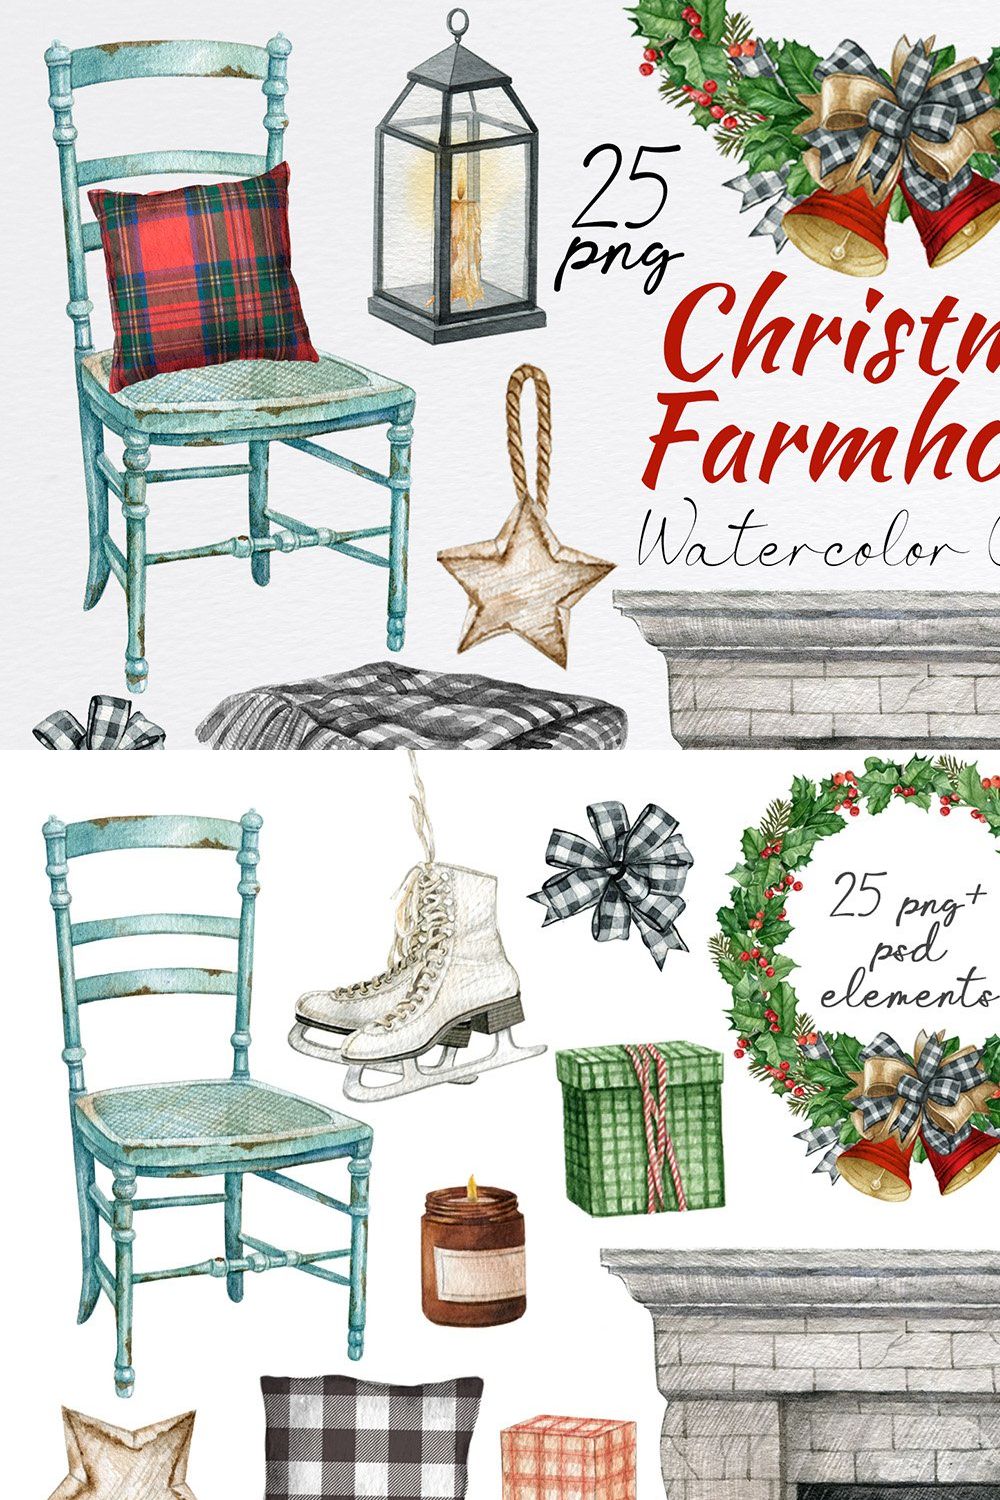 Farmhouse christmas decor clipart. pinterest preview image.